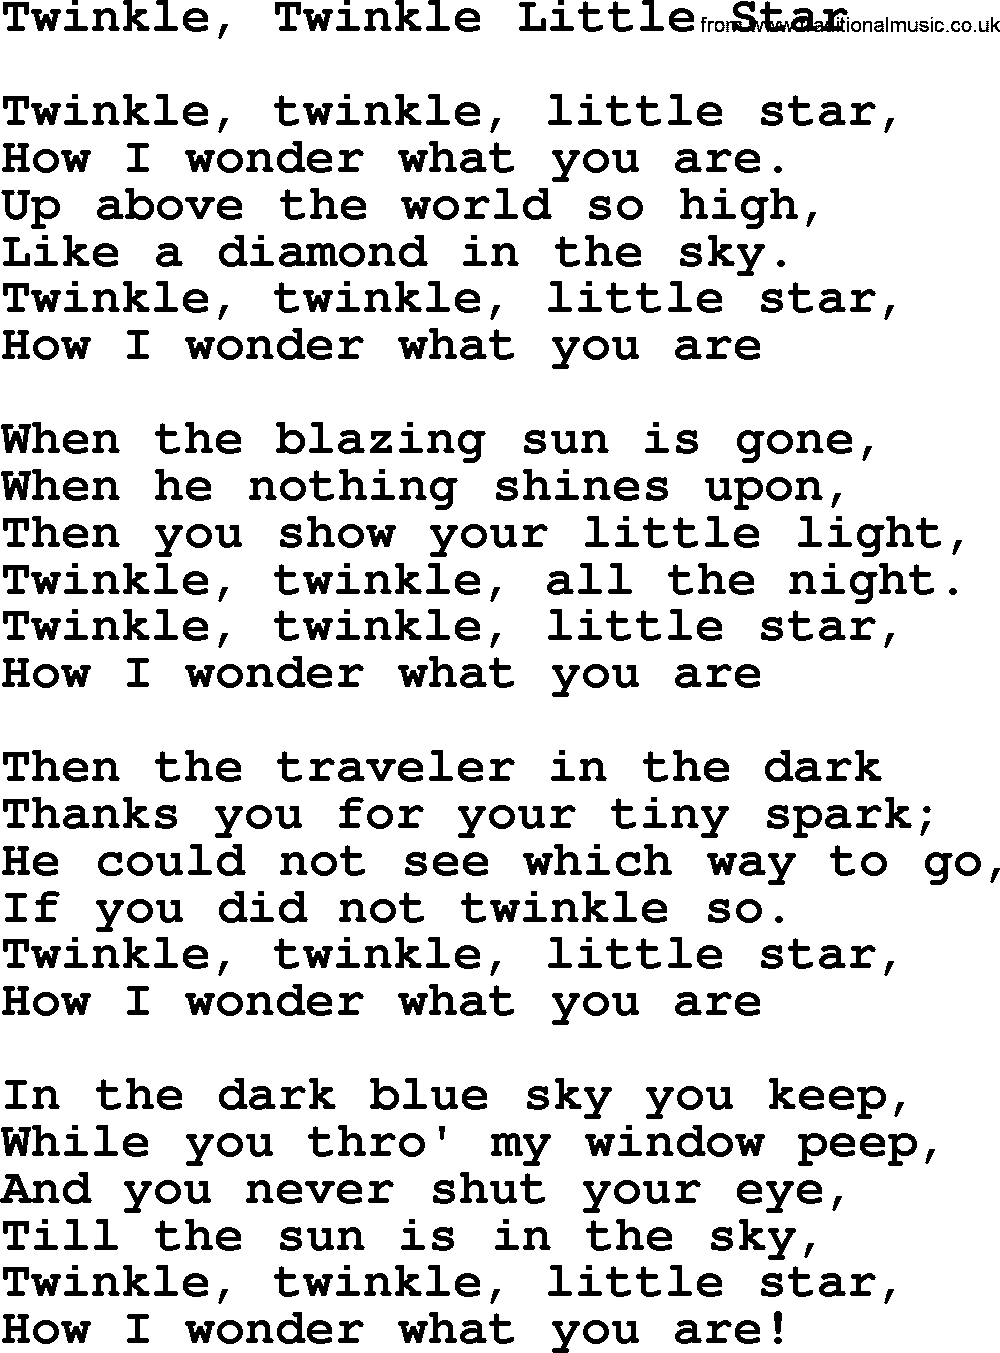 Willie Nelson song: Twinkle, Twinkle Little Star lyrics